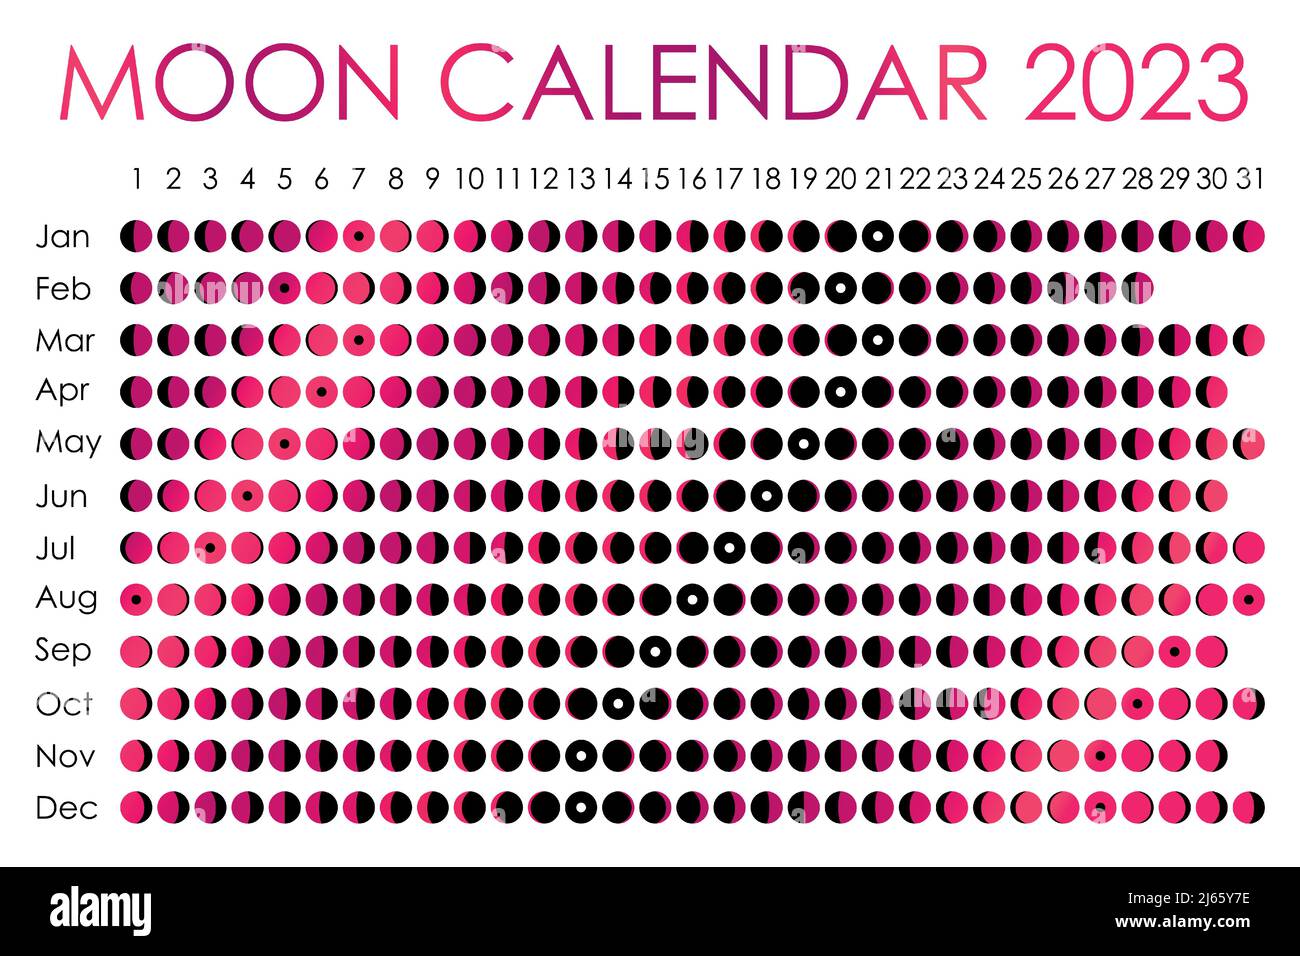 Лунный день календарь 2023. Календарь 2023. Календарь сентябрь-декабрь 2023. Лунный календарь на октябрь 2023. Календарь сентябрь 2023.